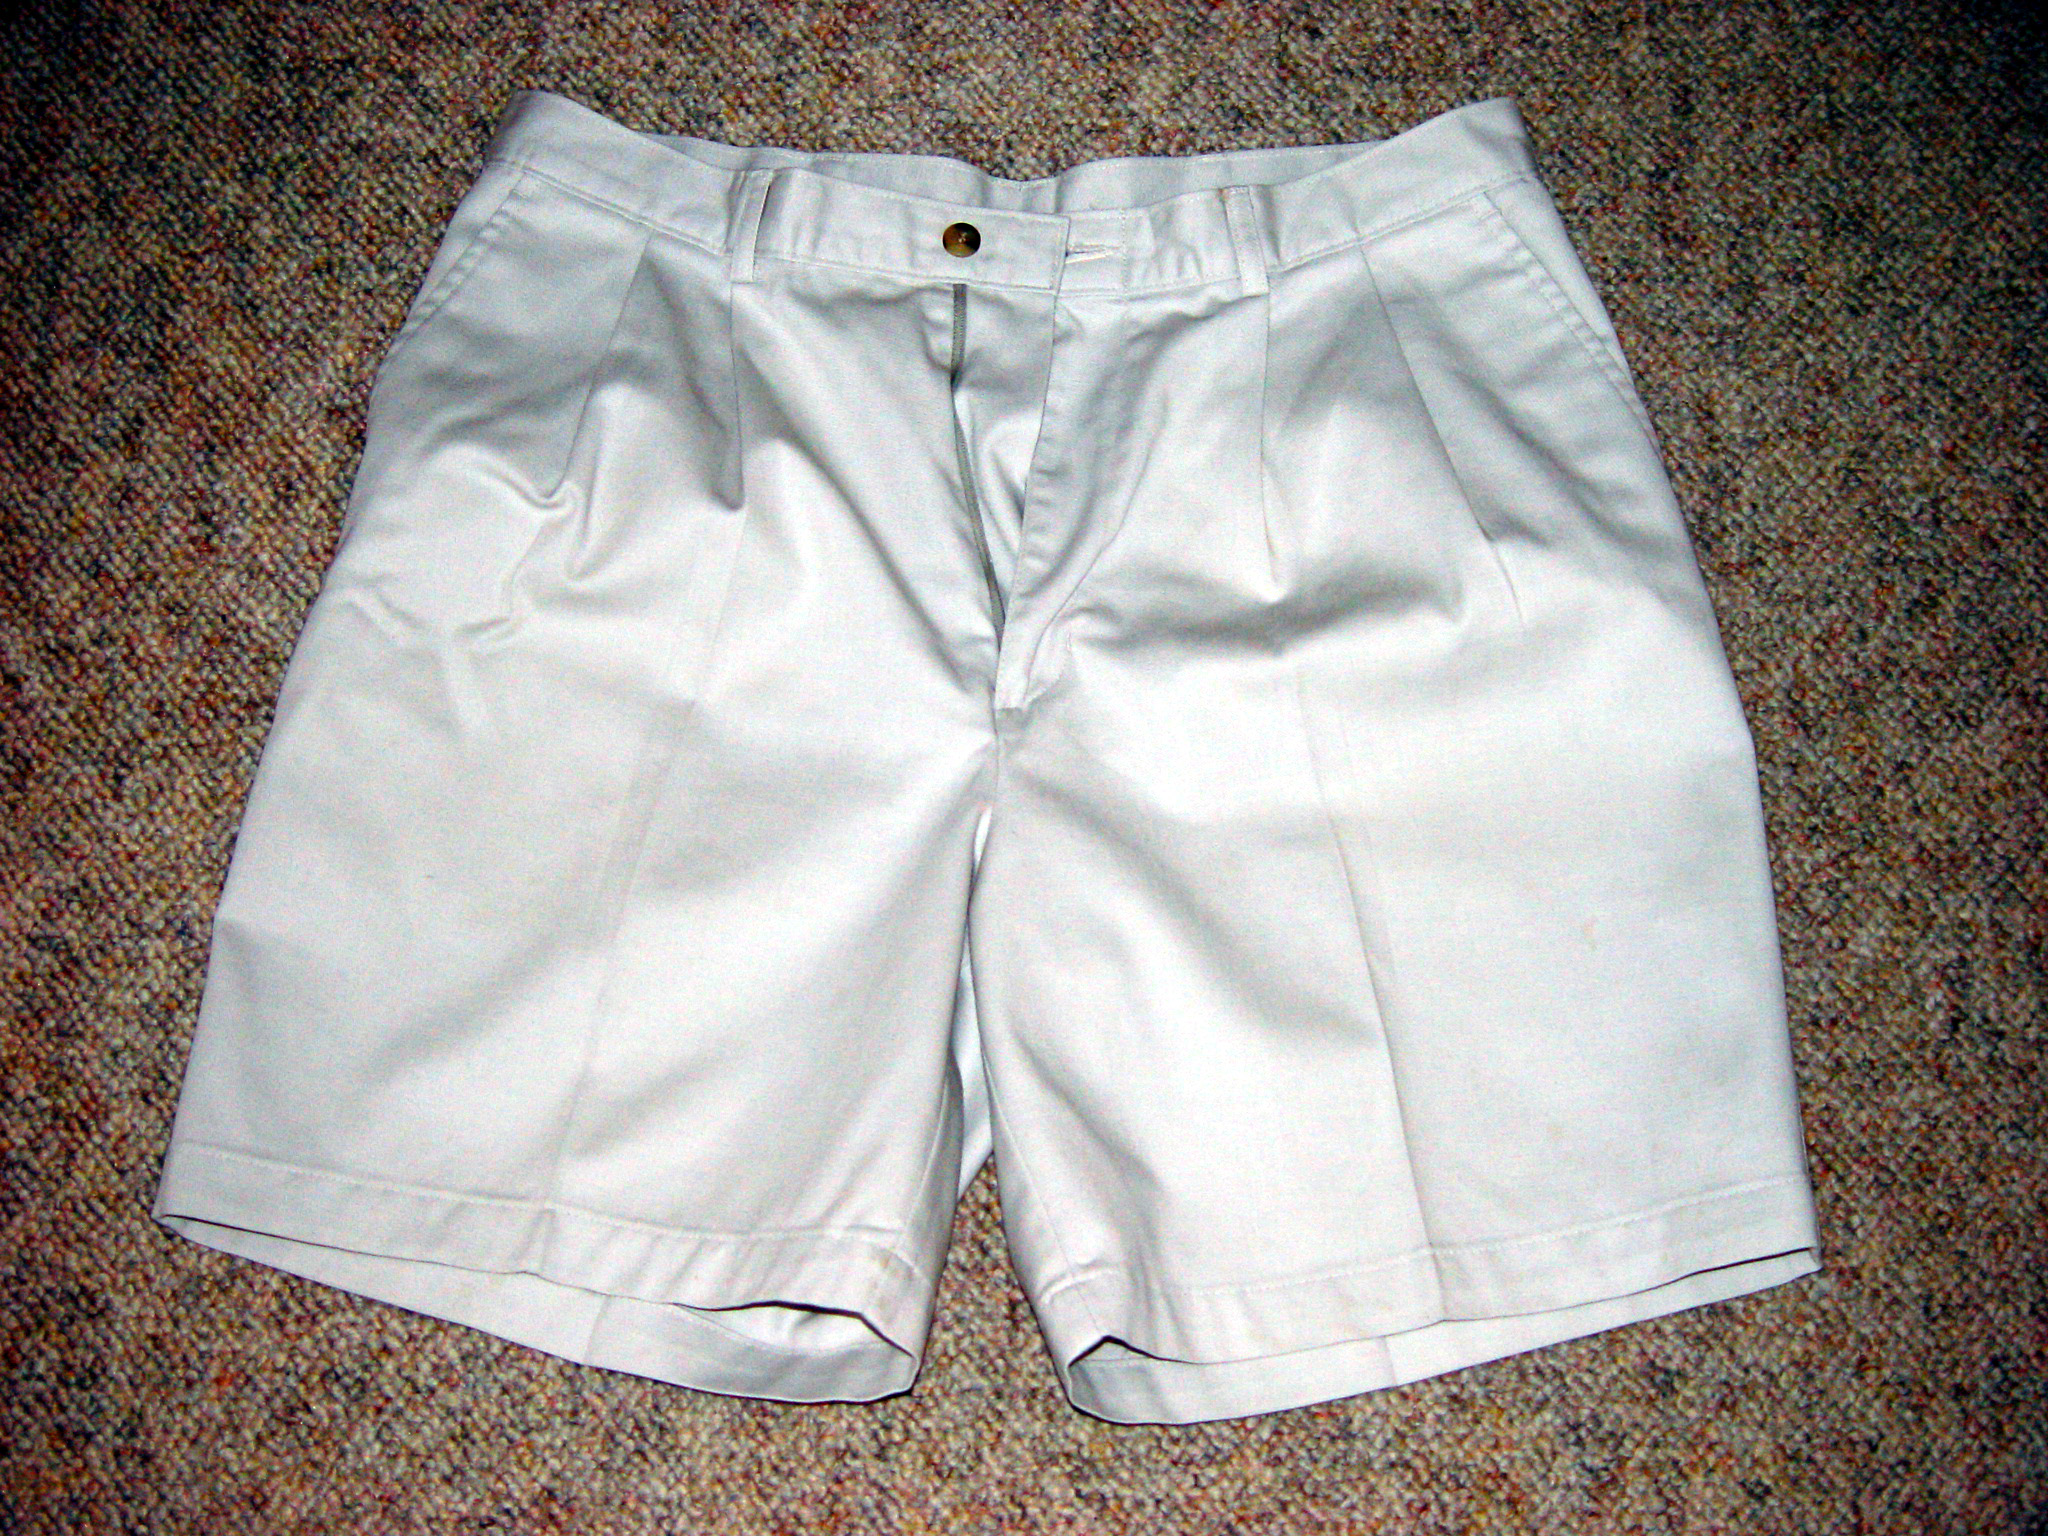 La imagen muestra un pantalón corto de caballero, de color blanco